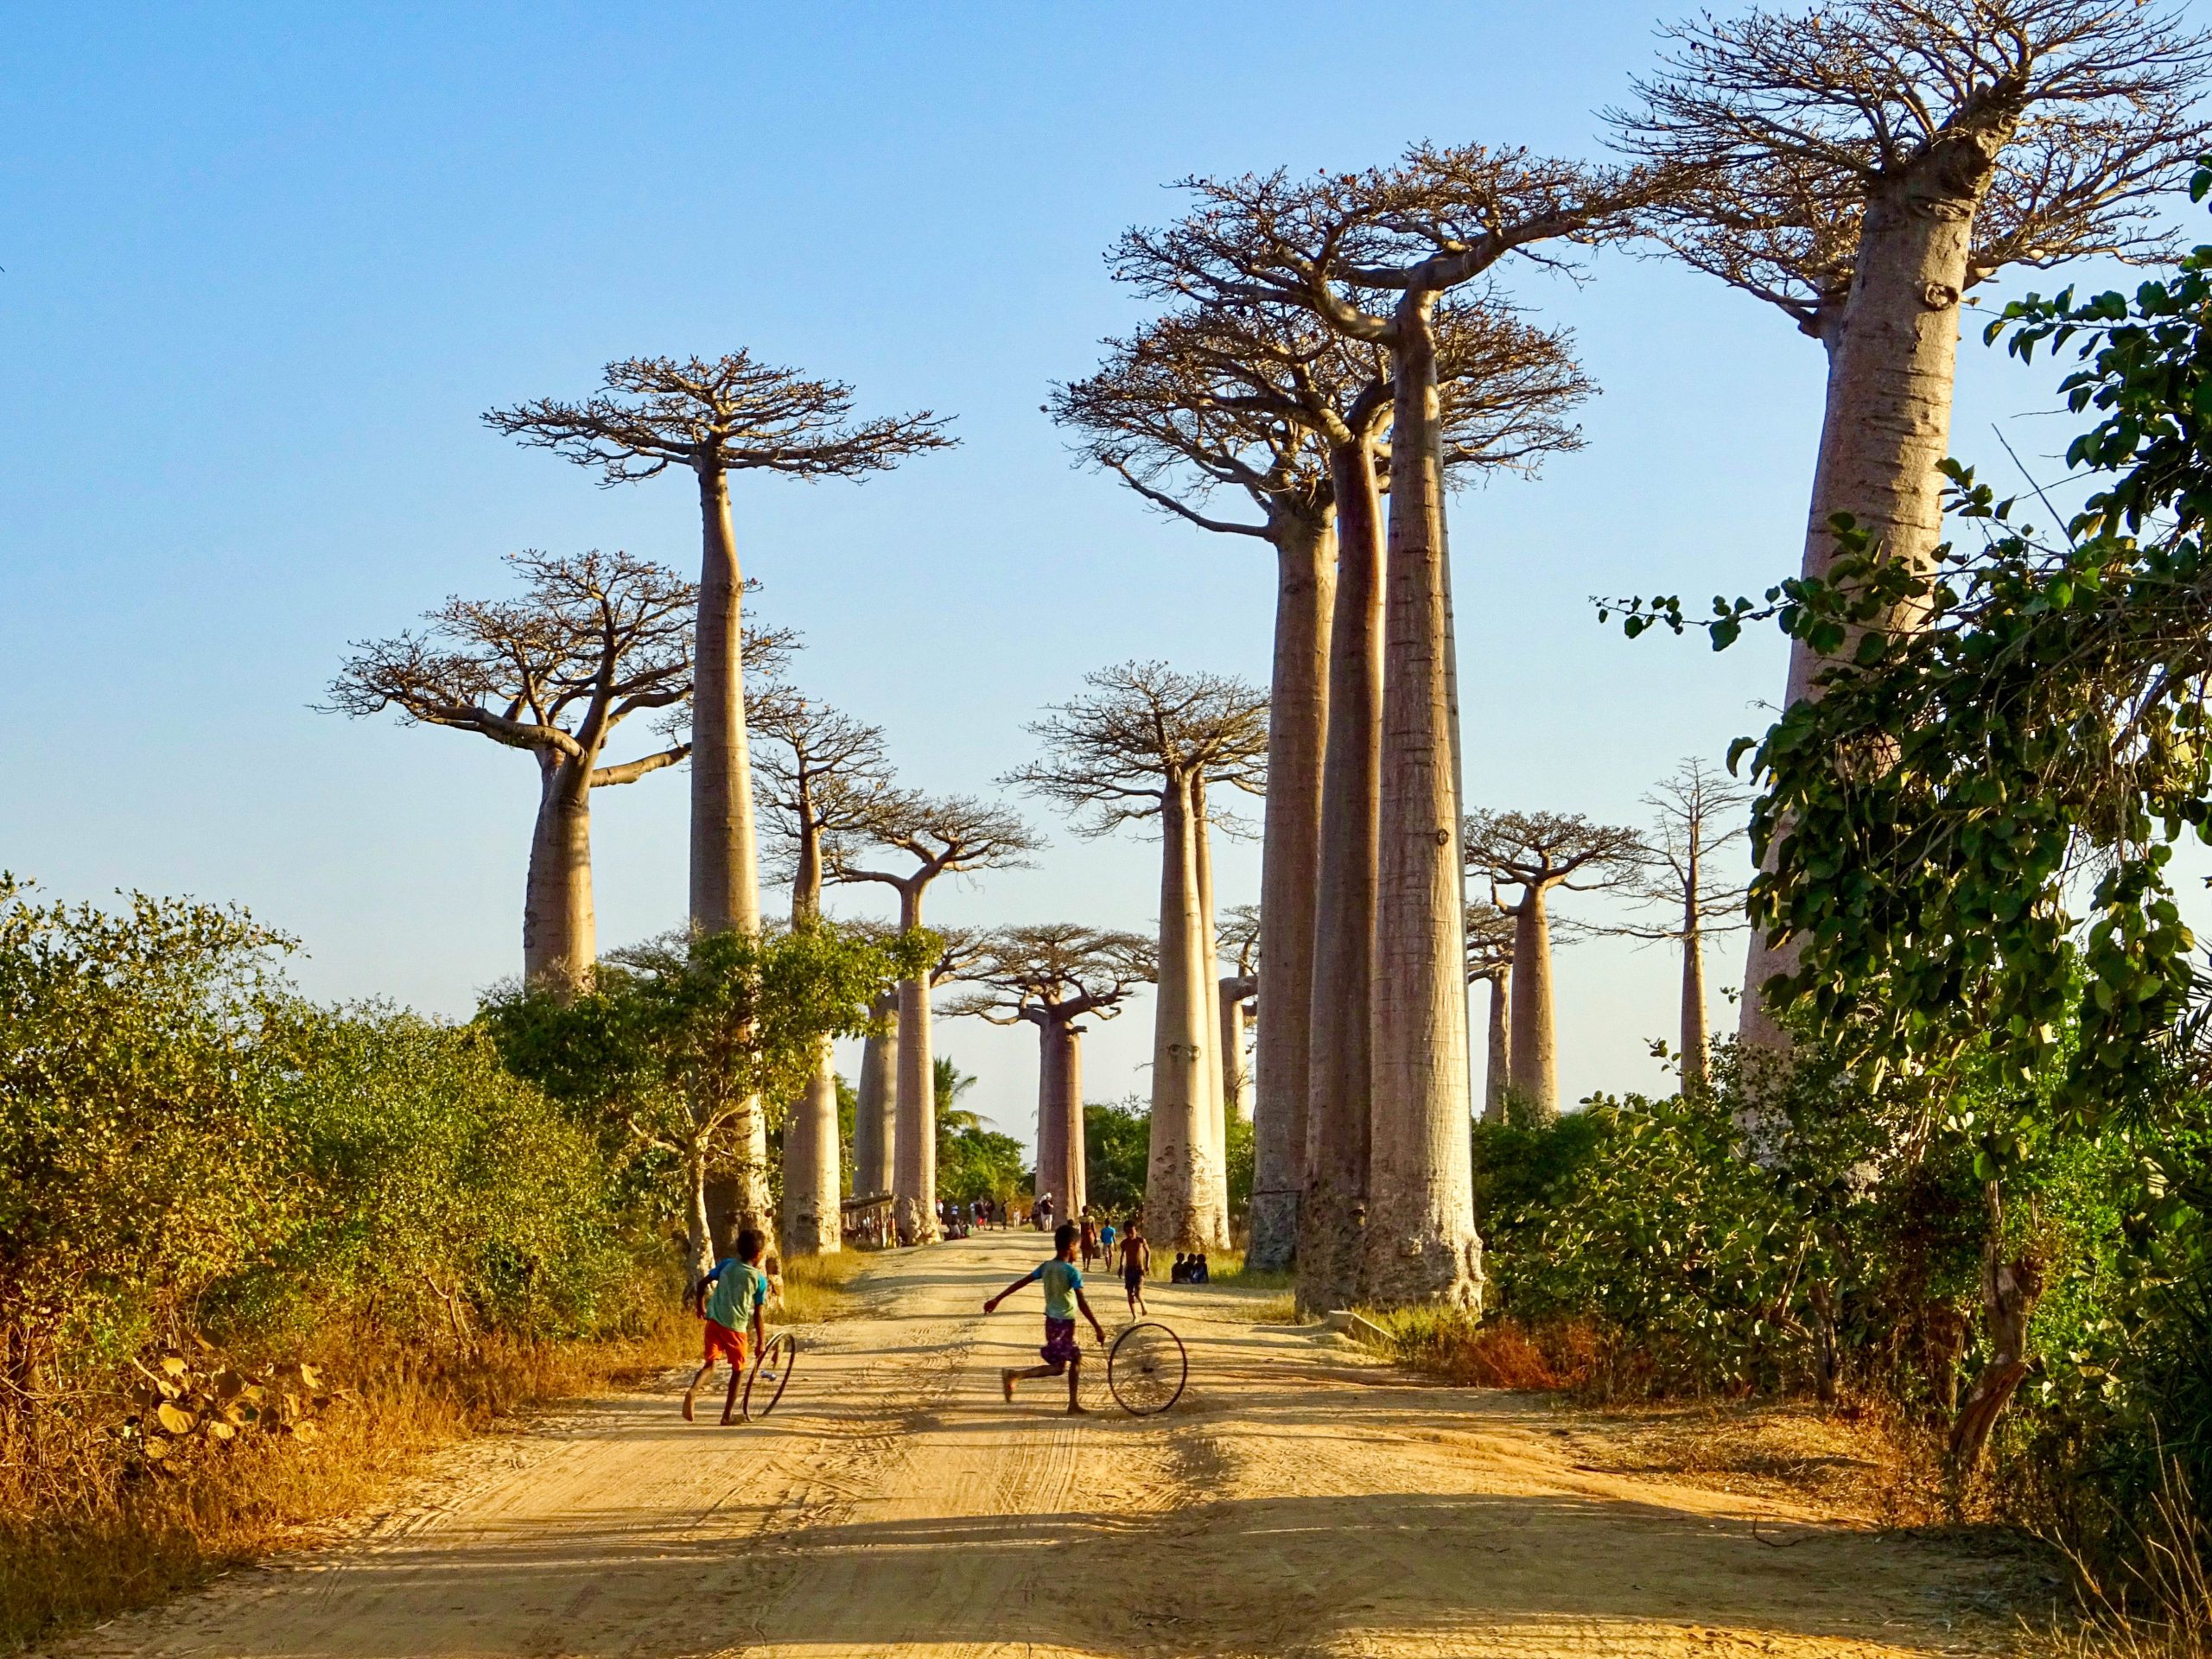 La calle Baobab cerca de Morondava